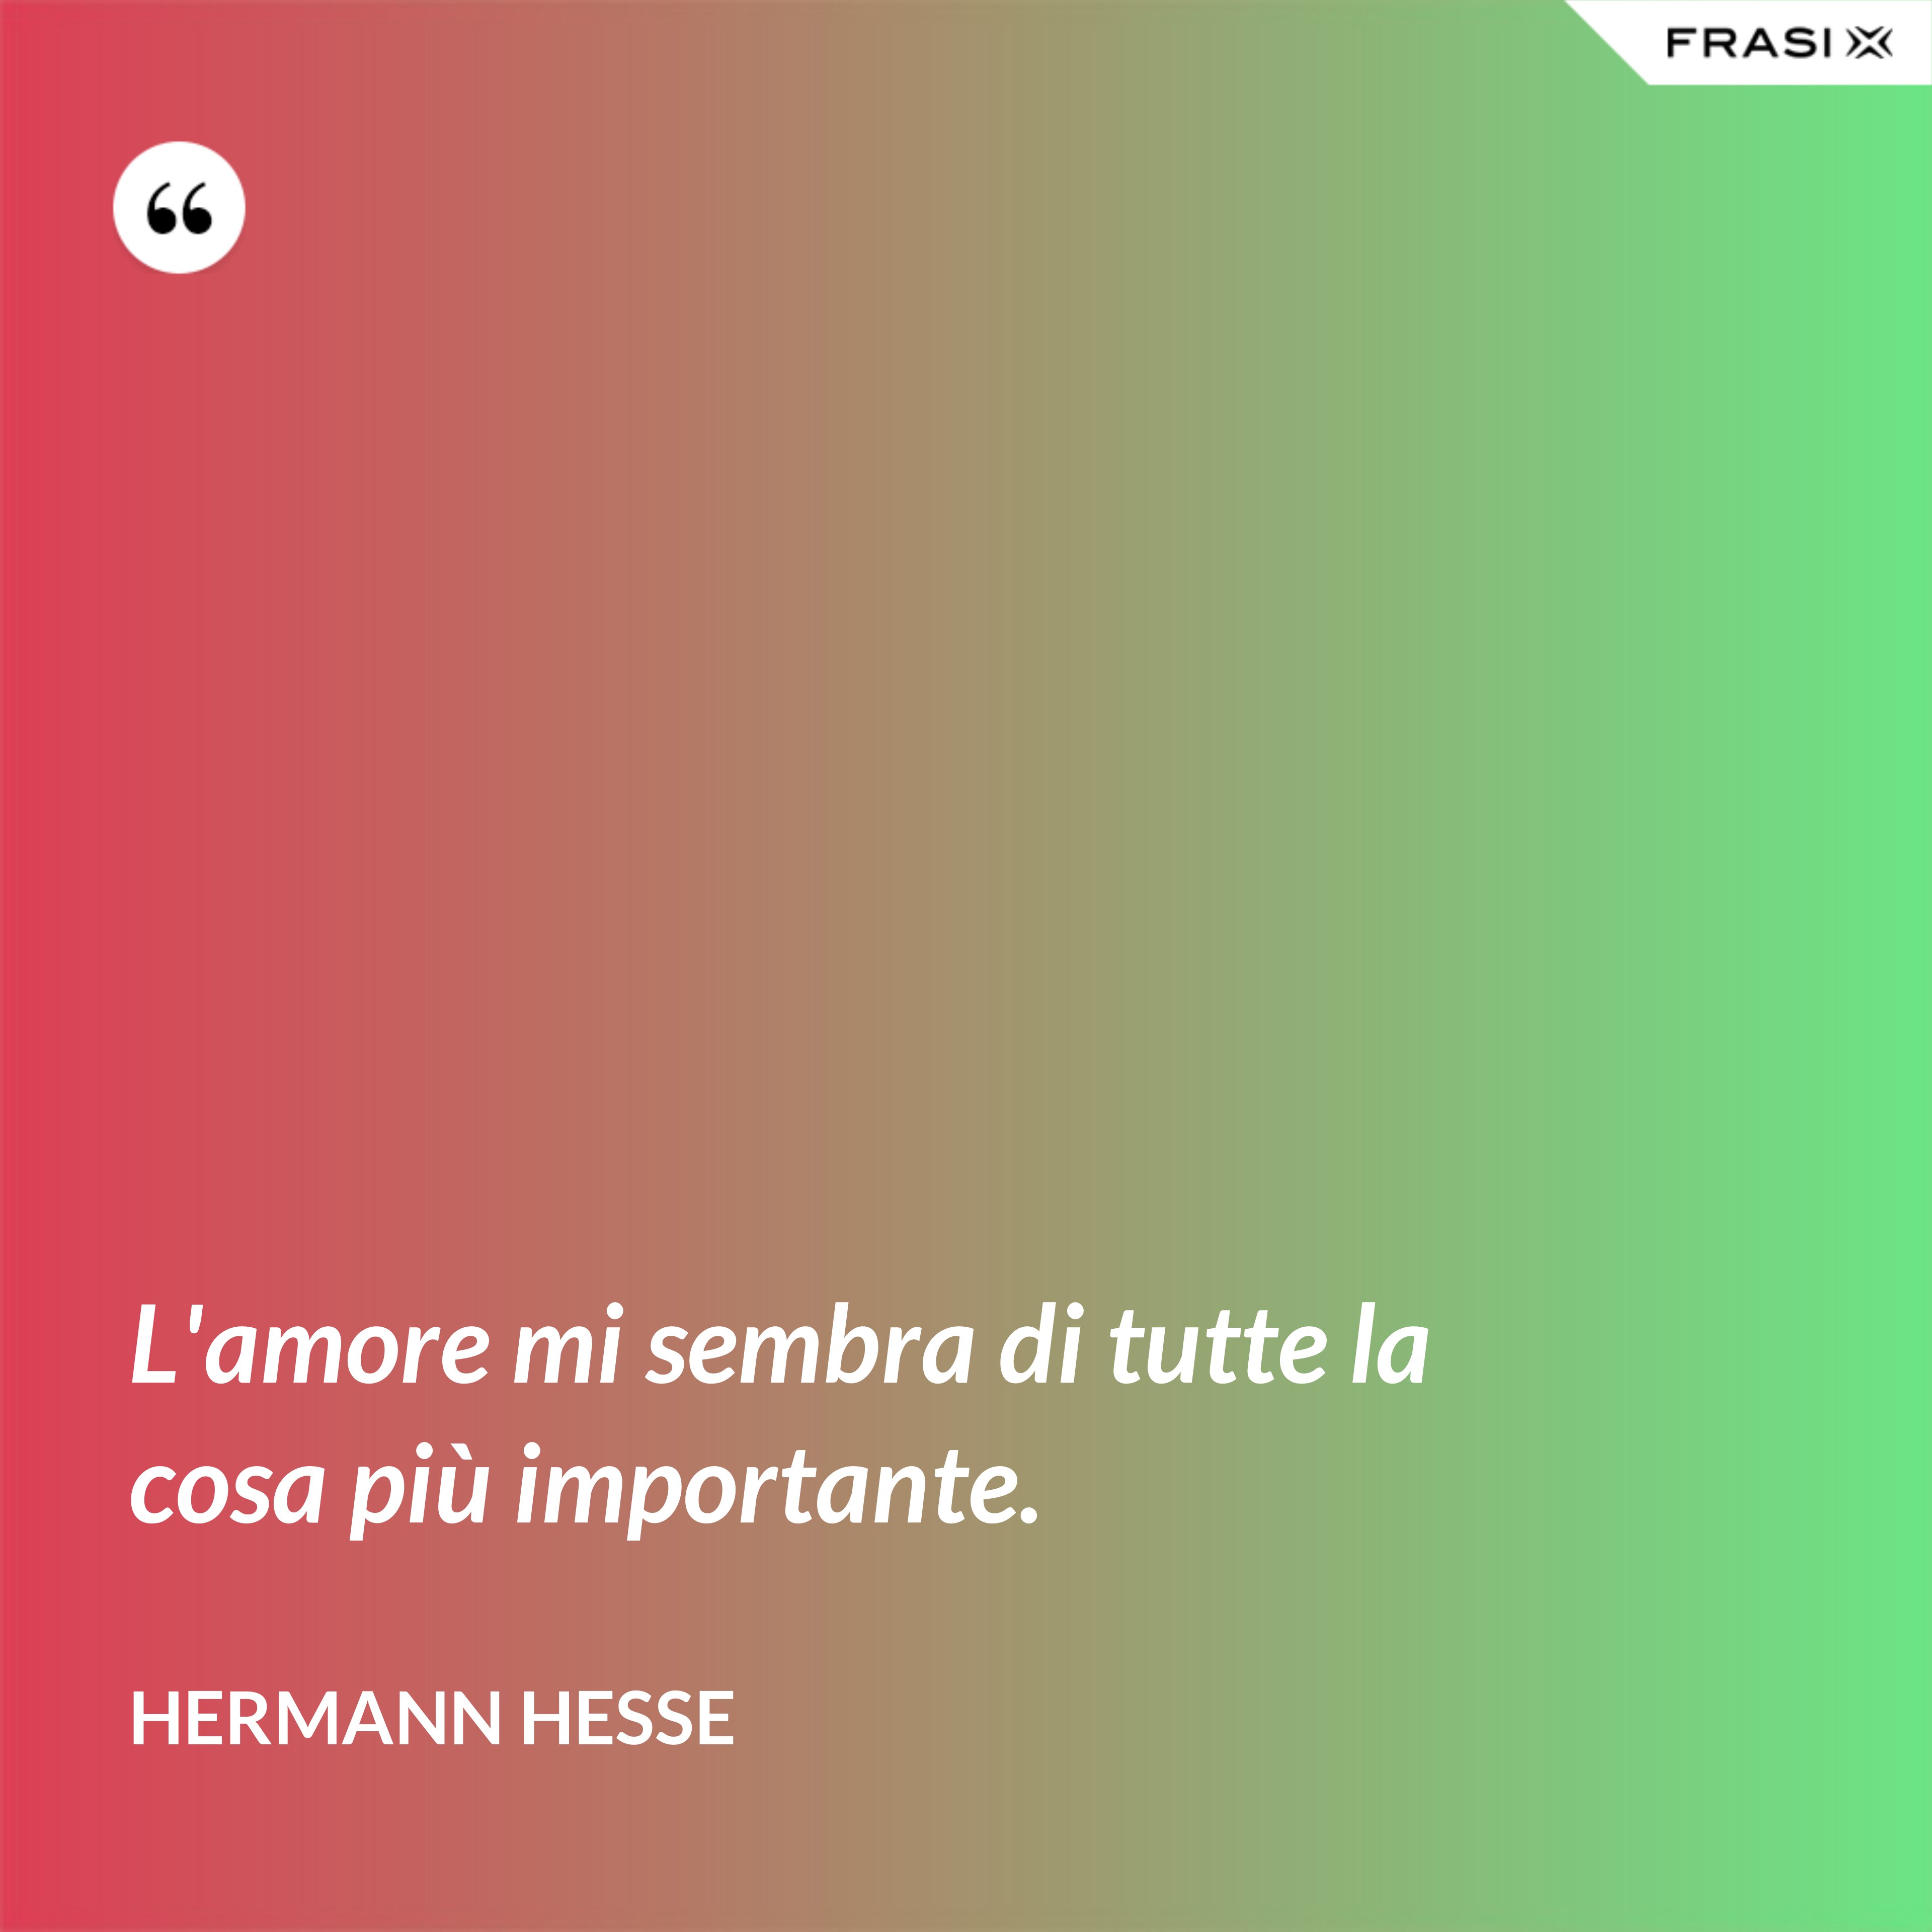 L'amore mi sembra di tutte la cosa più importante. - Hermann Hesse